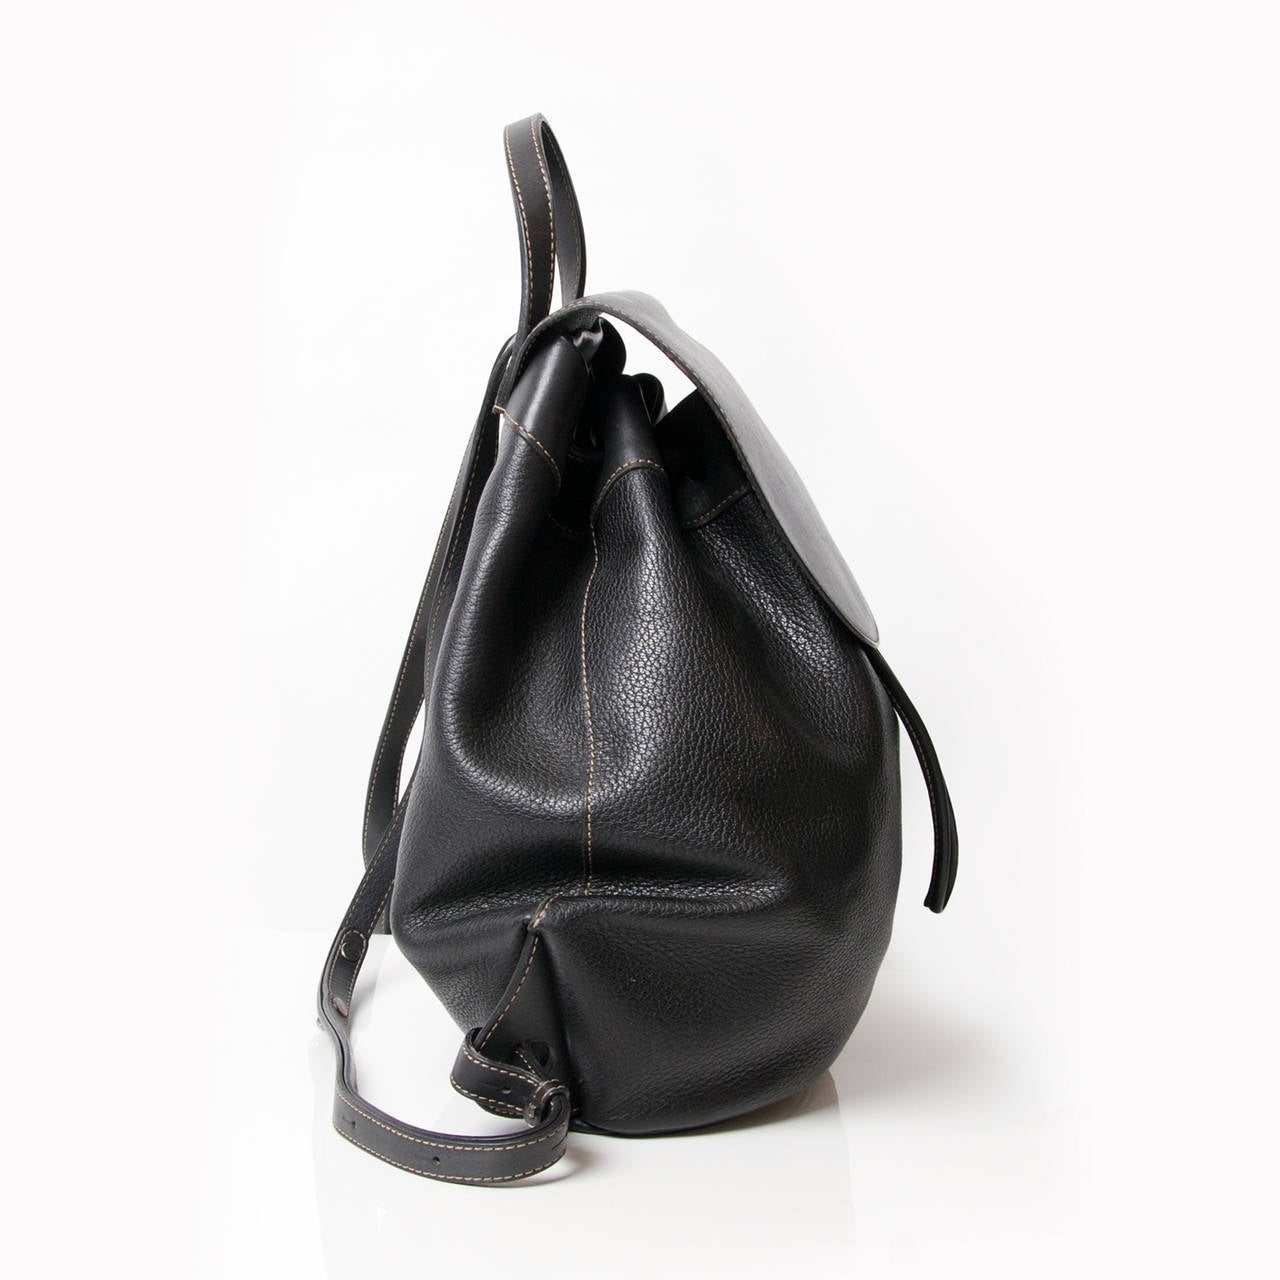 Deux de Delvaux black backpack with silver hardware. Strap closure.
Adjustable shoulder straps.